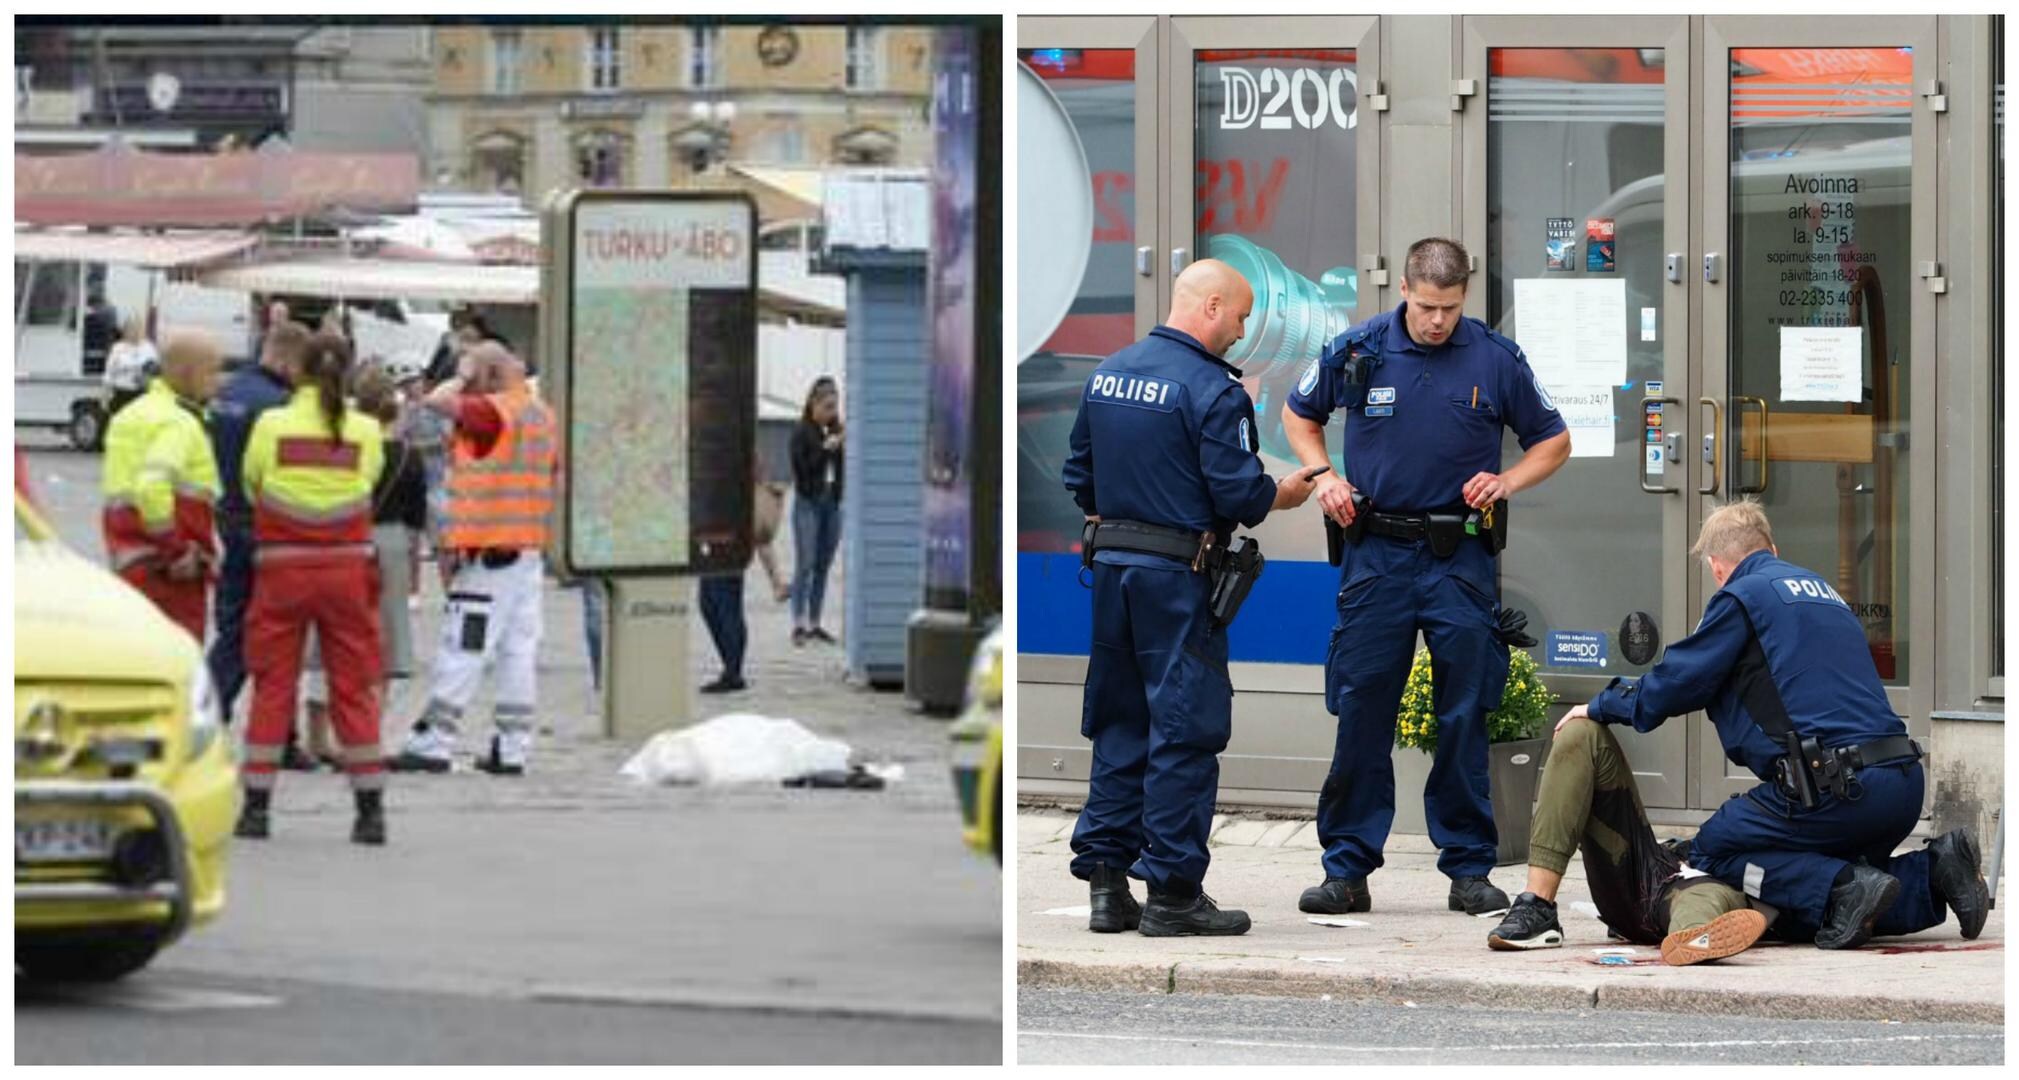 2 doden en 6 gewonden na aanval met mes in Finse stad Turku